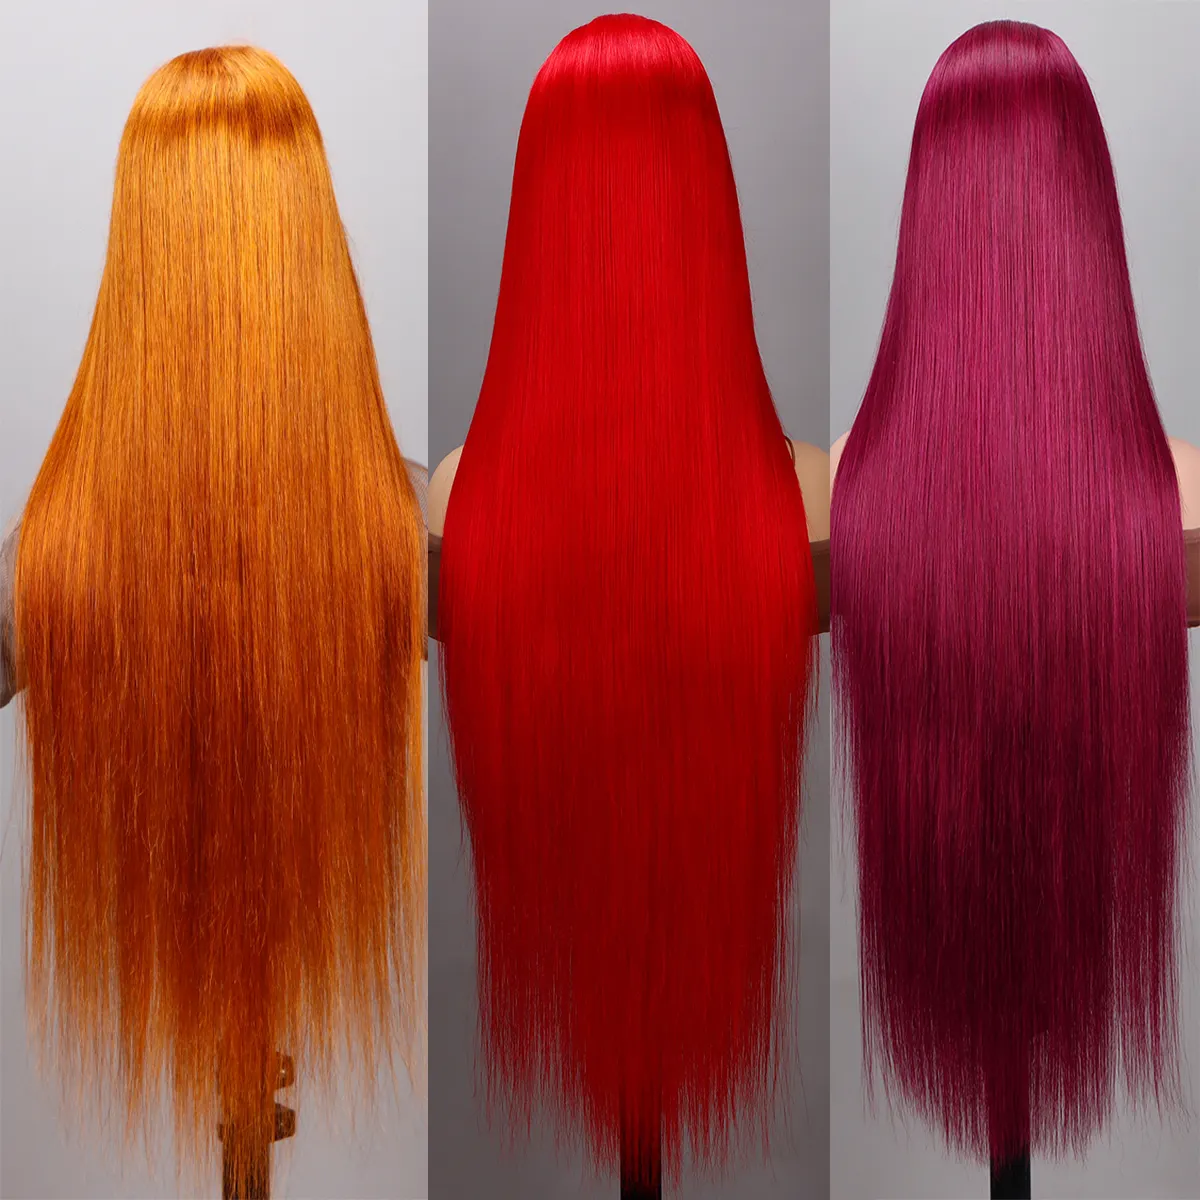 Spitzen-Front farbige Perücken 13 × 4 4 × 4 13 × 6 zweifarbige echthaar-Perücken transparente Spitzen-Salon-Stilistik-Echthaar-farbige Perücke